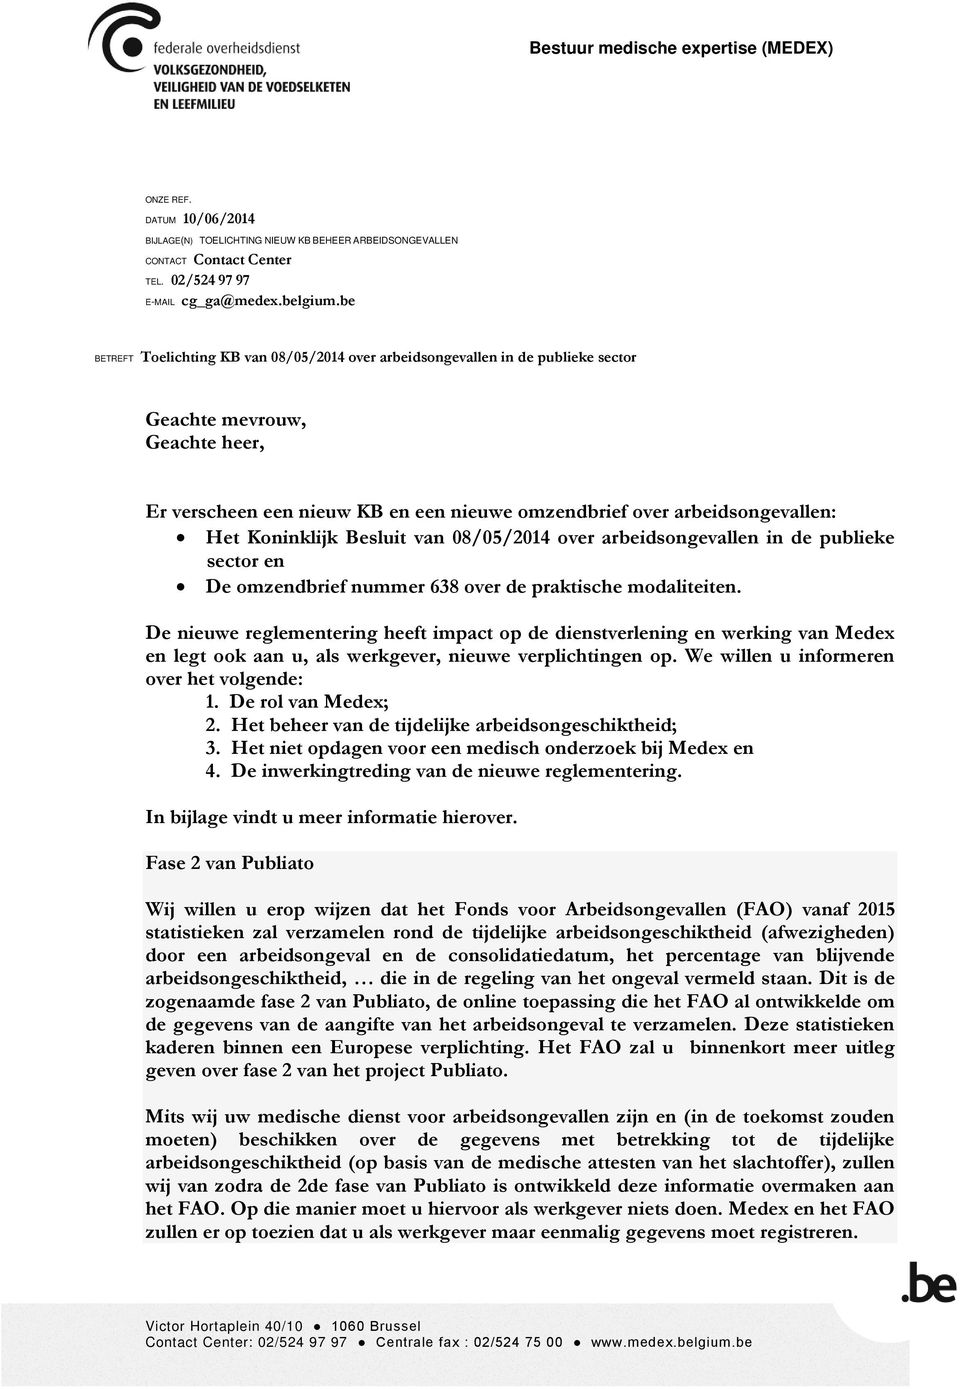 Koninklijk Besluit van 08/05/2014 over arbeidsongevallen in de publieke sector en De omzendbrief nummer 638 over de praktische modaliteiten.